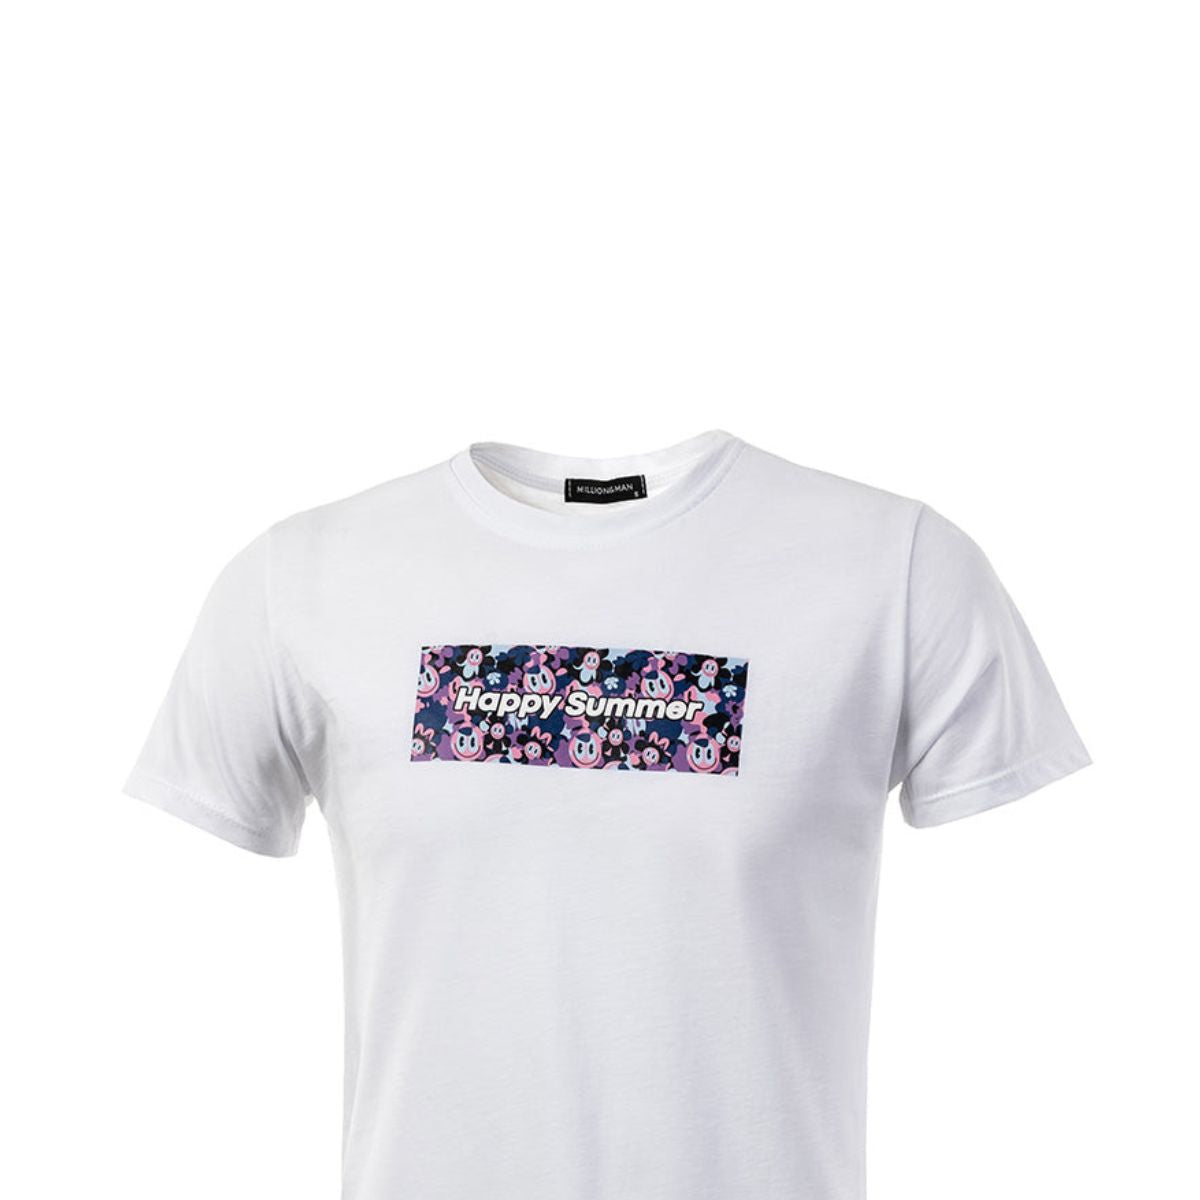 Ανδρικό T-Shirt (753) - Panda Clothing